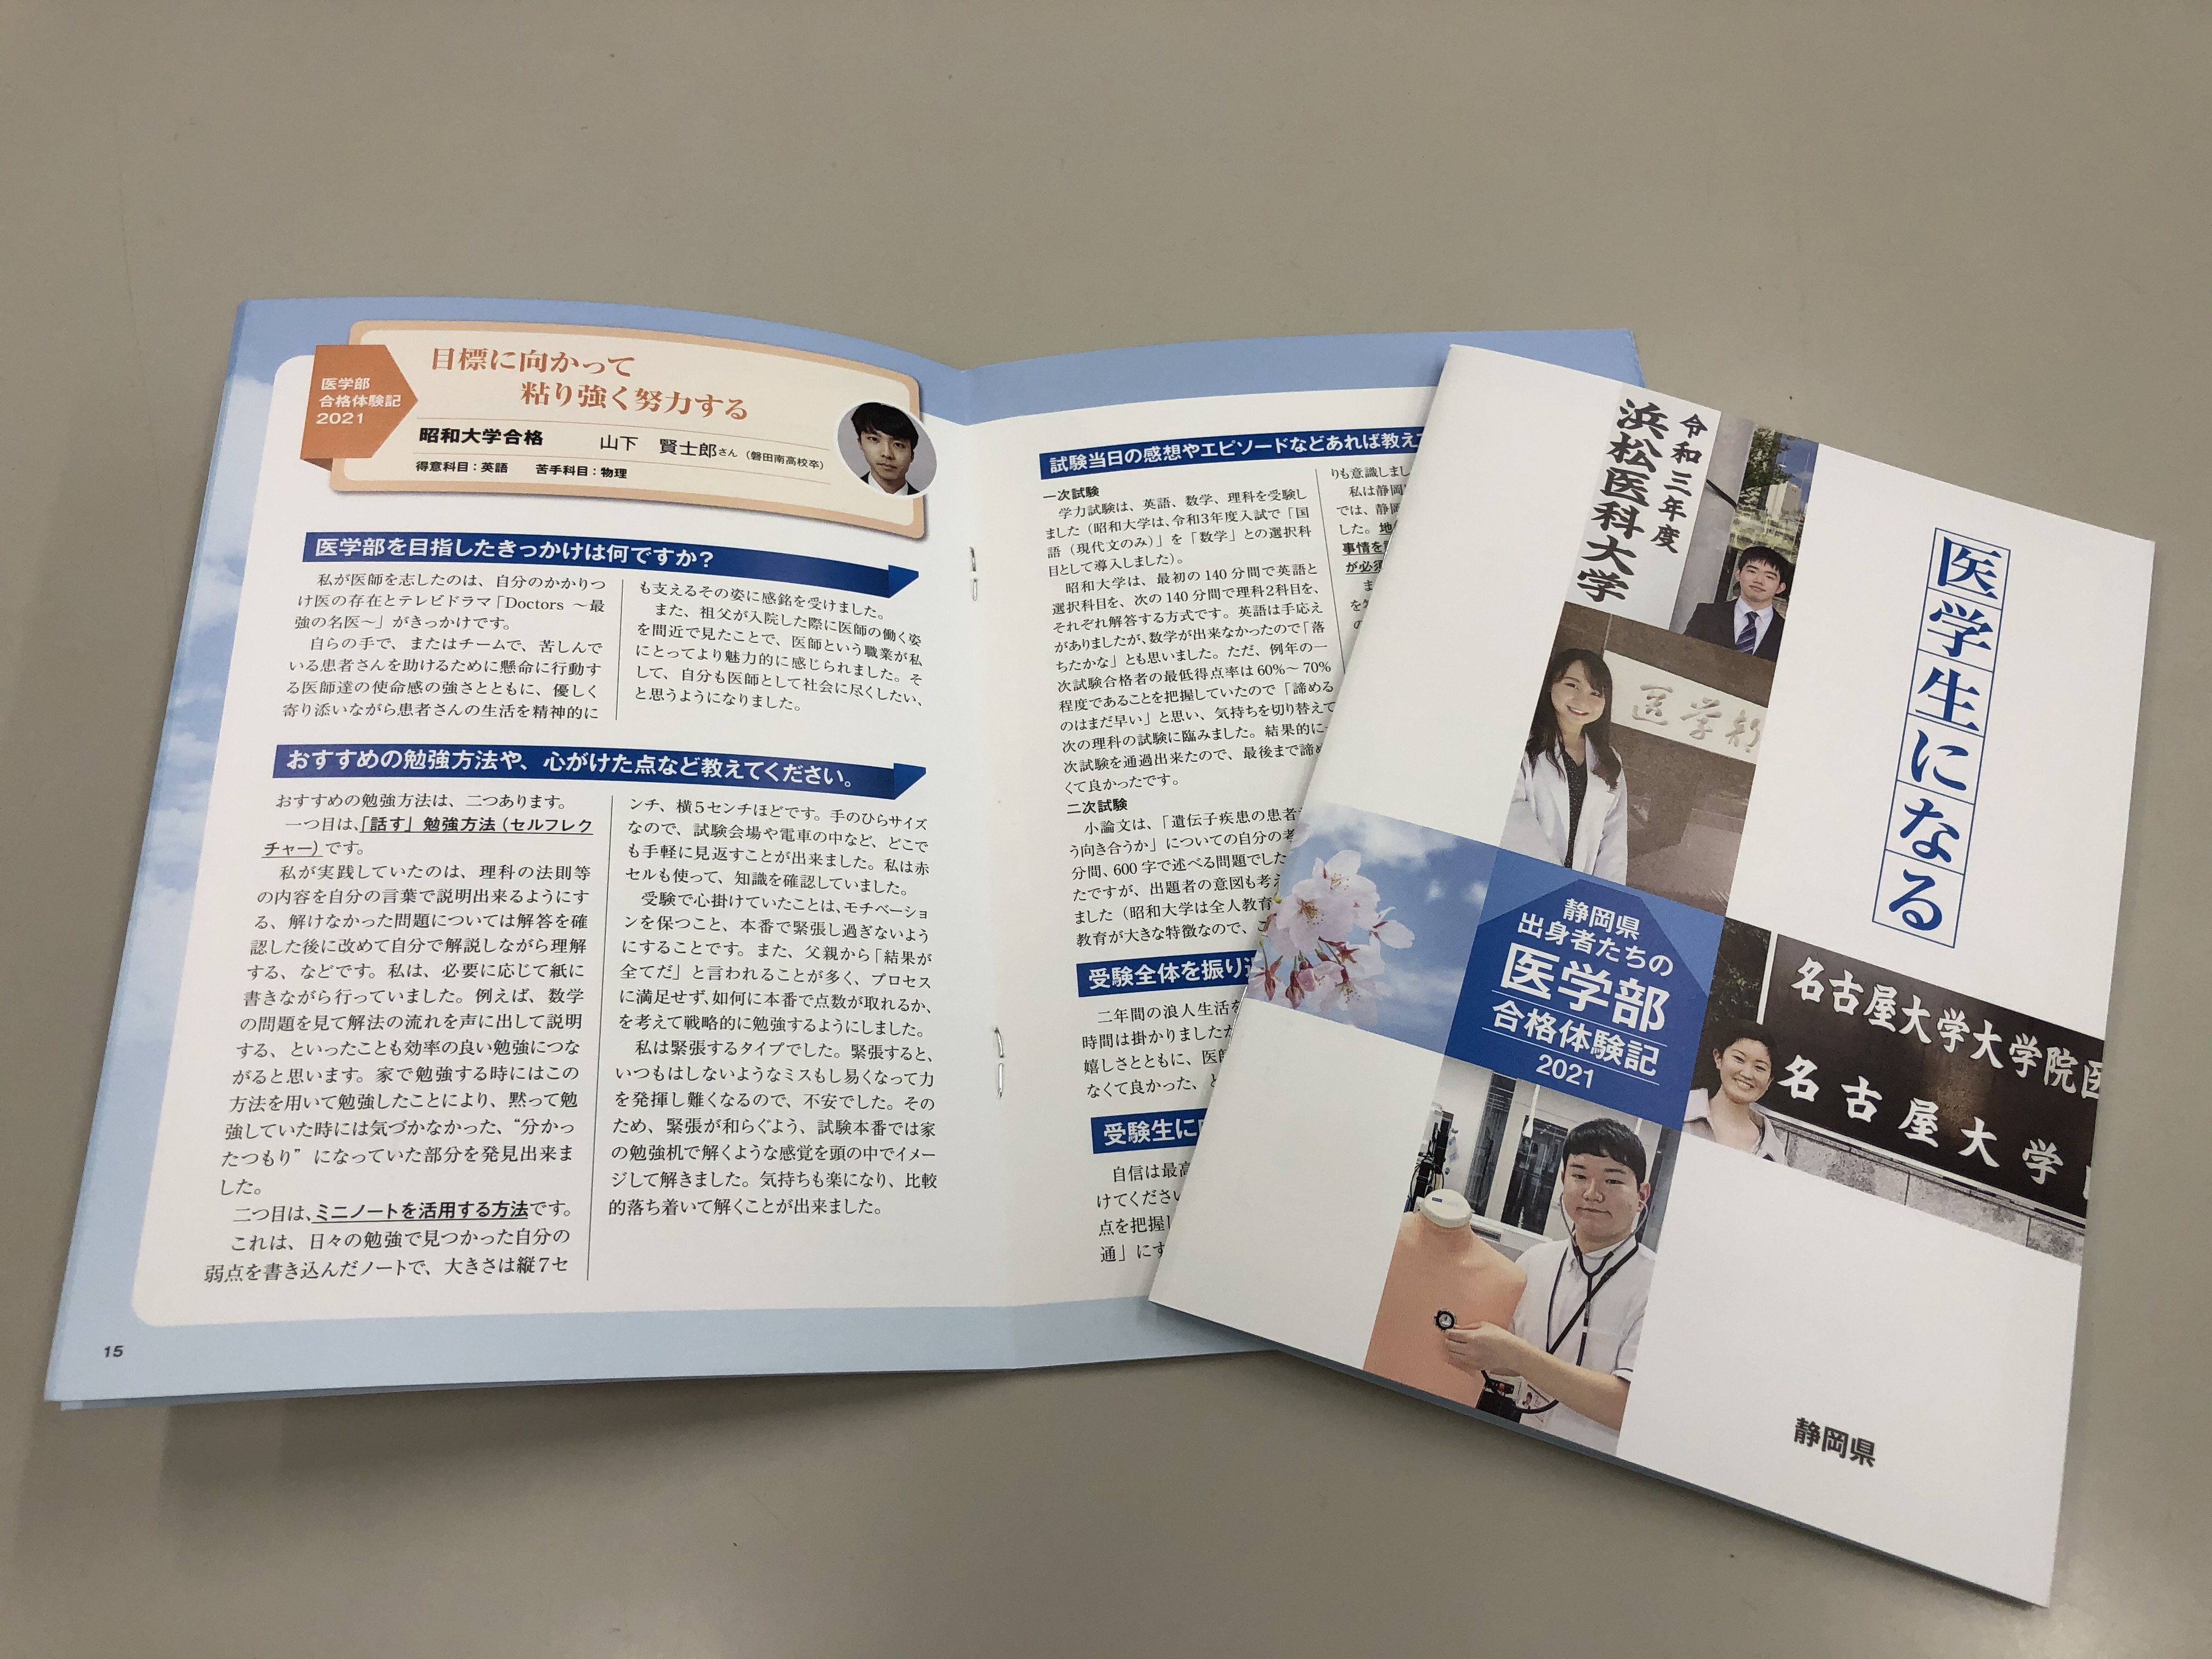 医師をこころざす若者へ 静岡県出身者による医学部合格体験記の発行 静岡県のプレスリリース